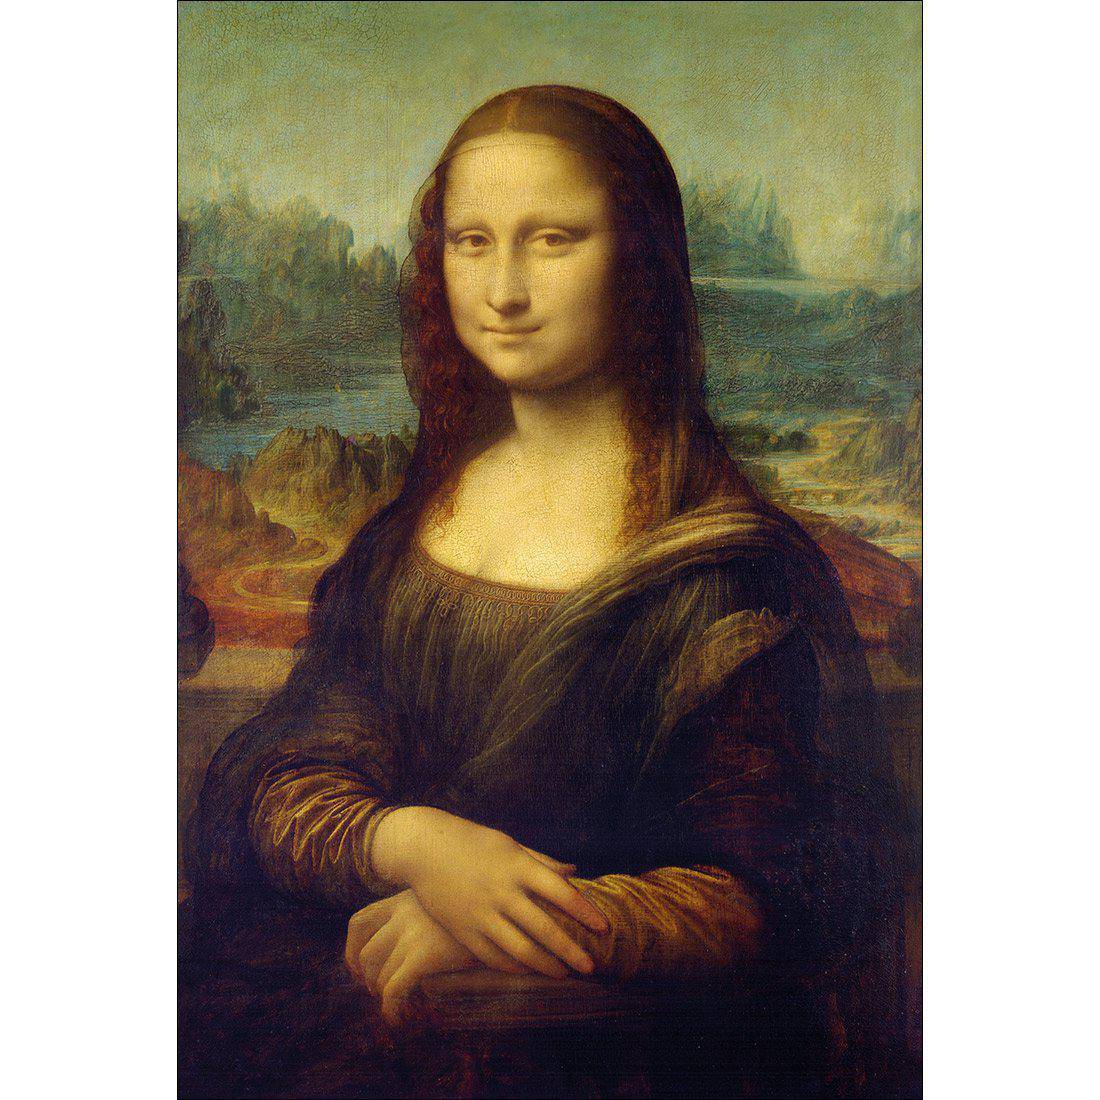 Mona Lisa - Da Vinci Canvas Art-Canvas-Wall Art Designs-45x30cm-Canvas - No Frame-Wall Art Designs